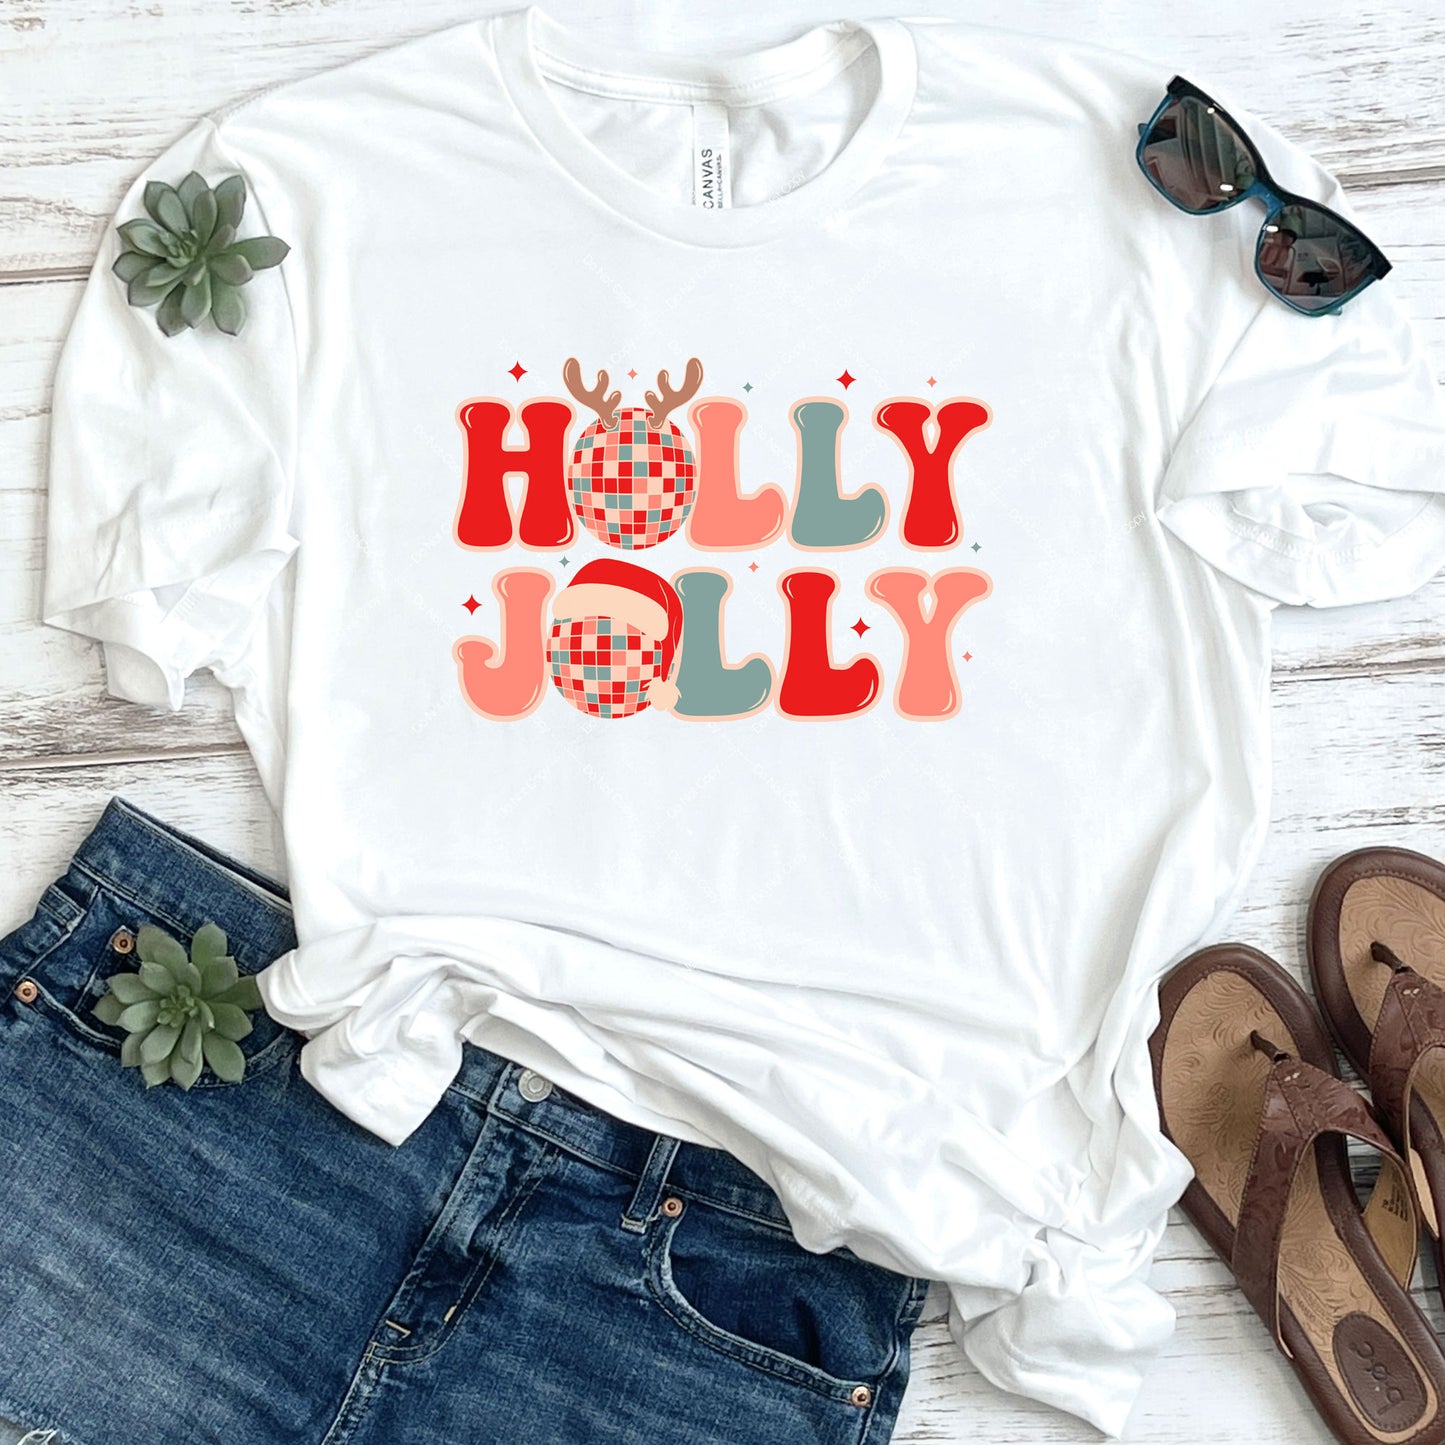 Holly Jolly DTF